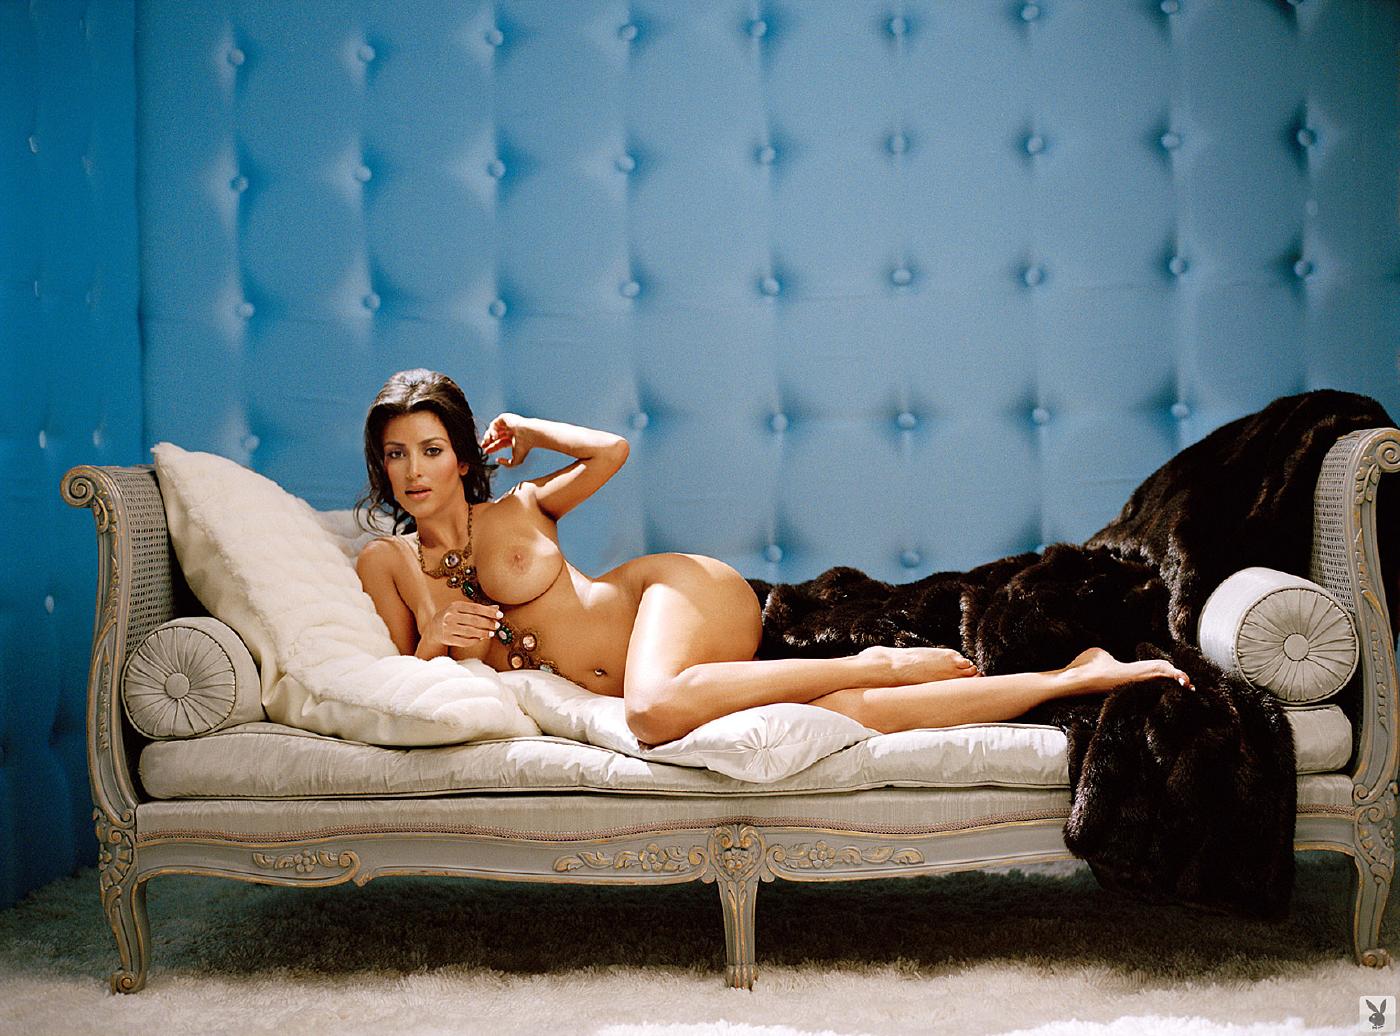 Kim Kardashian Nude Playboy Playmodels Photoshoot Leaked 17